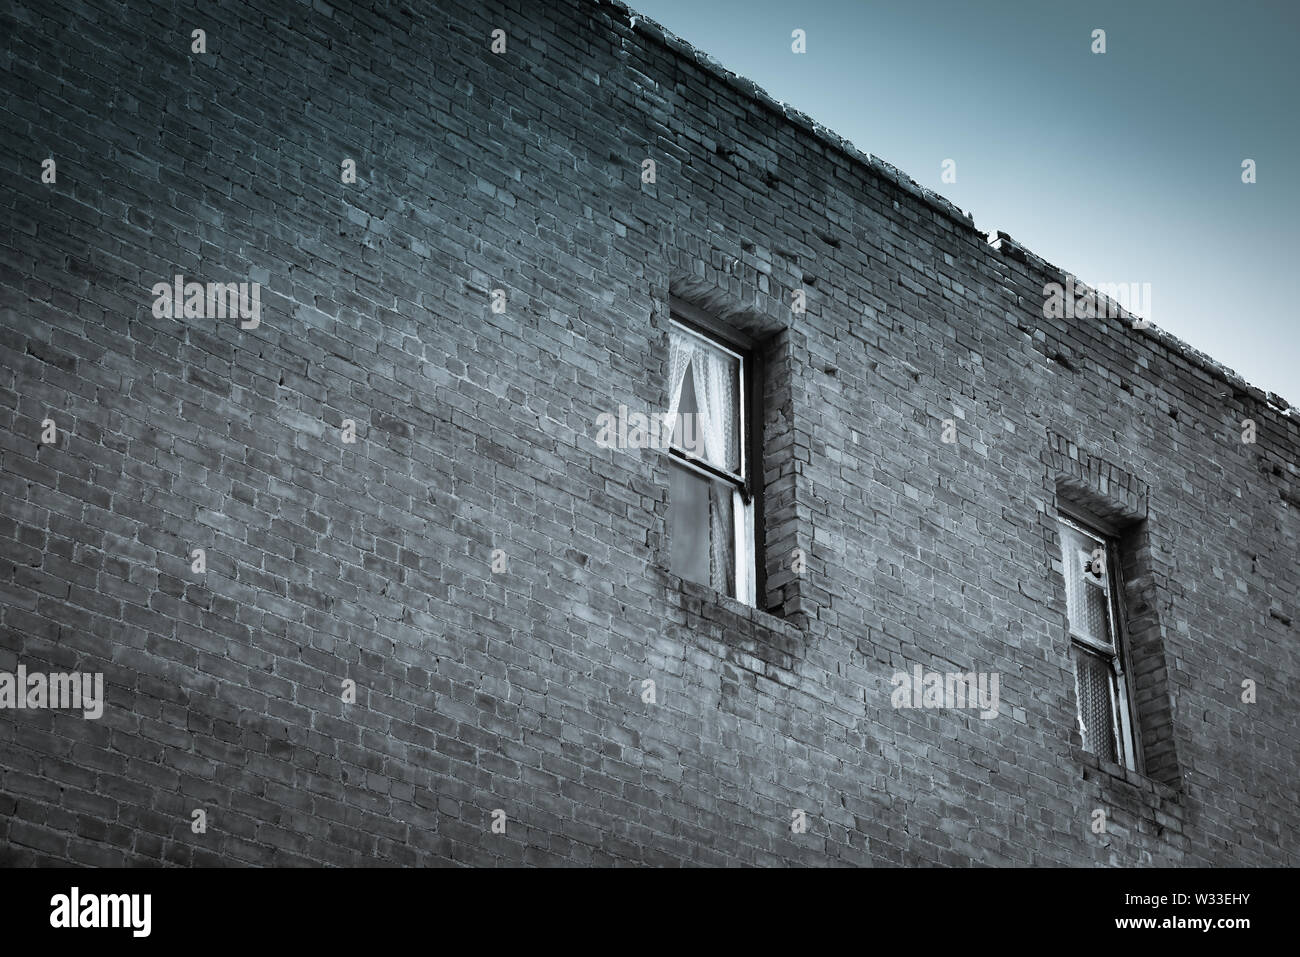 Un spazio negativo la composizione di un secolo il vecchio muro di mattoni di un edificio con windows occupata dal mistero e storia nel sudovest USA Foto Stock